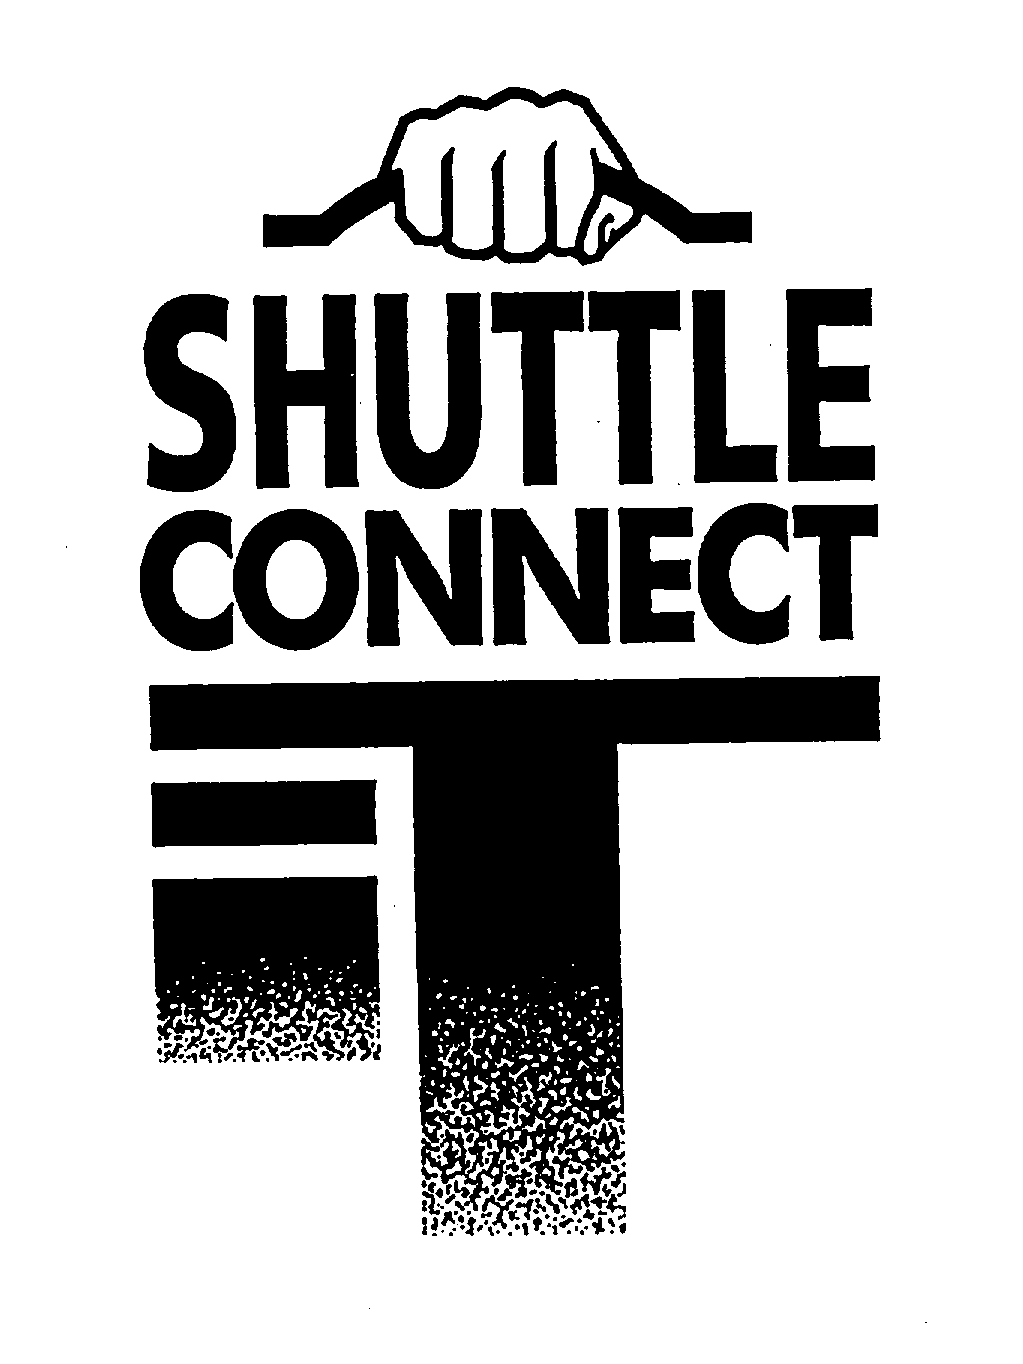  SHUTTLE CONNECT-IT